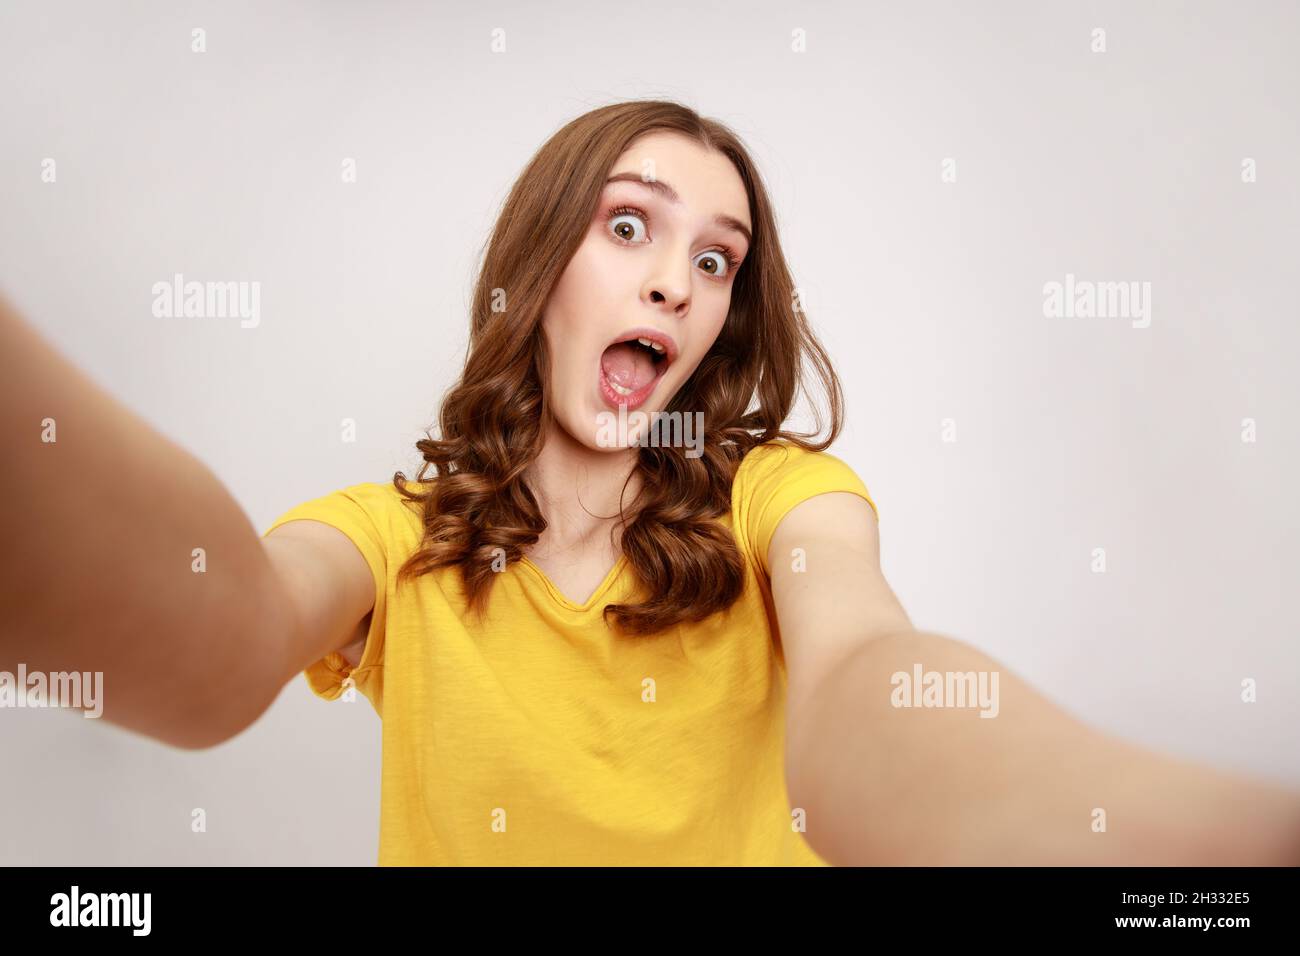 Porträt eines aufgeregt überraschten Teenagers, das ein gelbes T-Shirt trägt, das Selfie macht, die Kamera mit offenem POV anschaut, aus der Perspektive des Fotos. Innenaufnahme des Studios isoliert auf grauem Hintergrund. Stockfoto